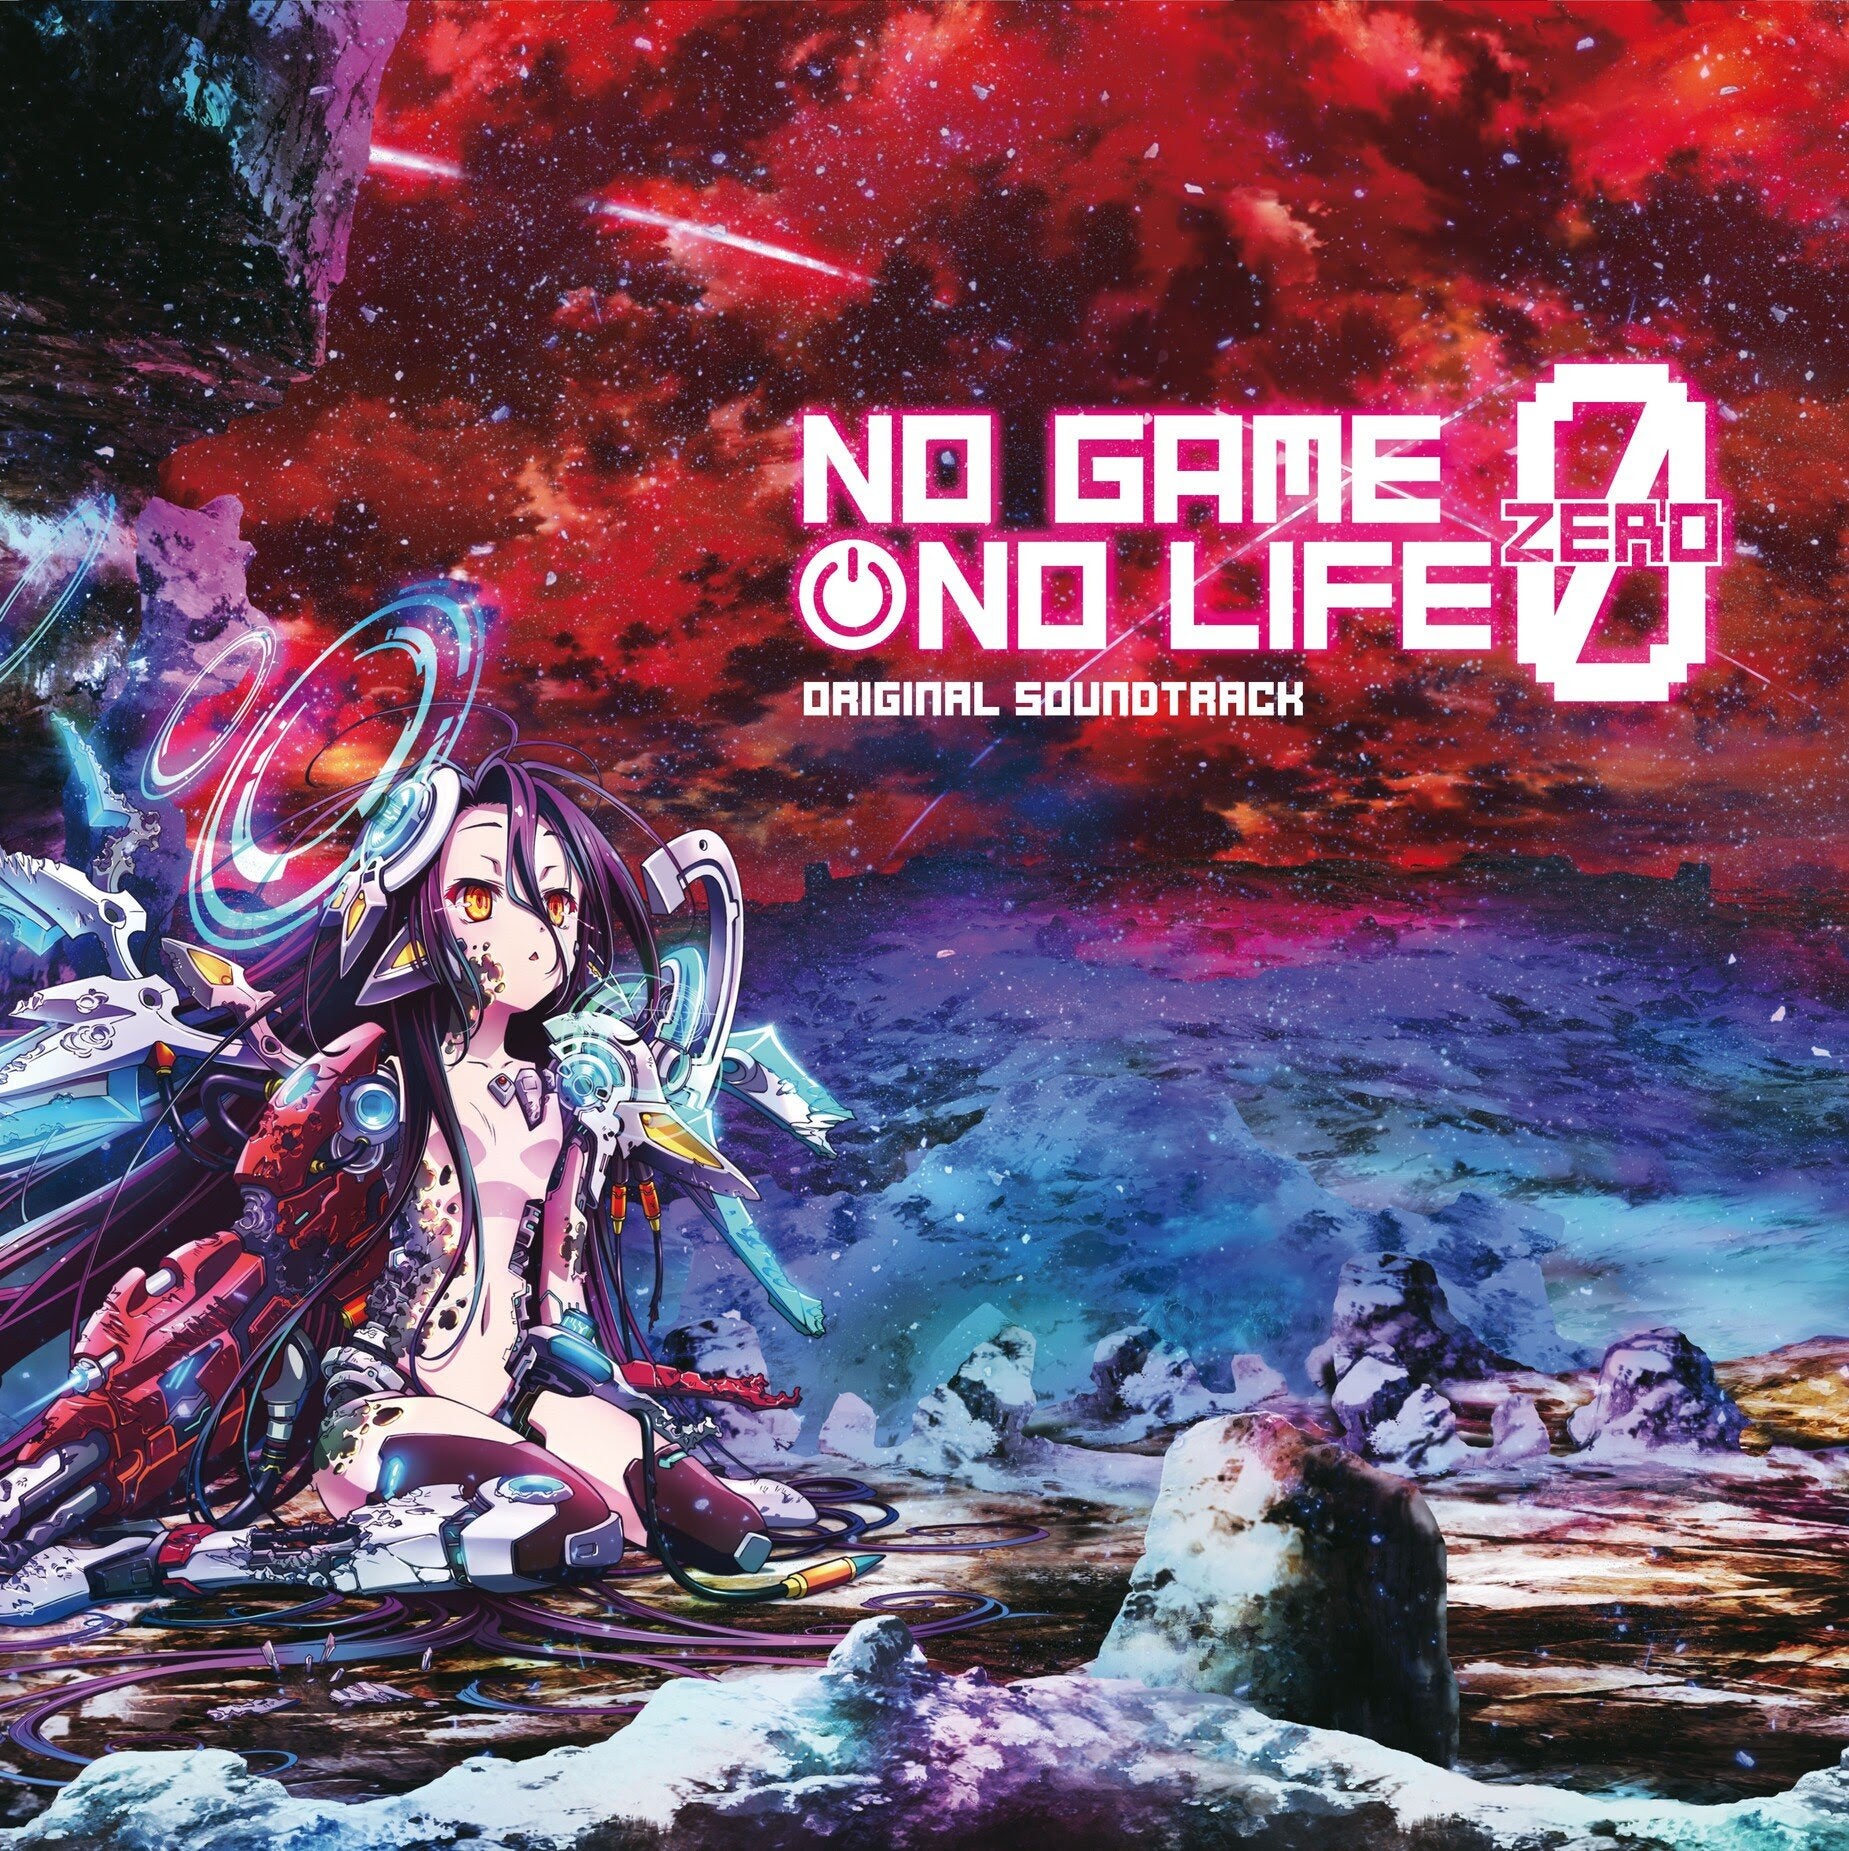 No Game No Life: Zero (Original Soundtrack) – Light in the Attic